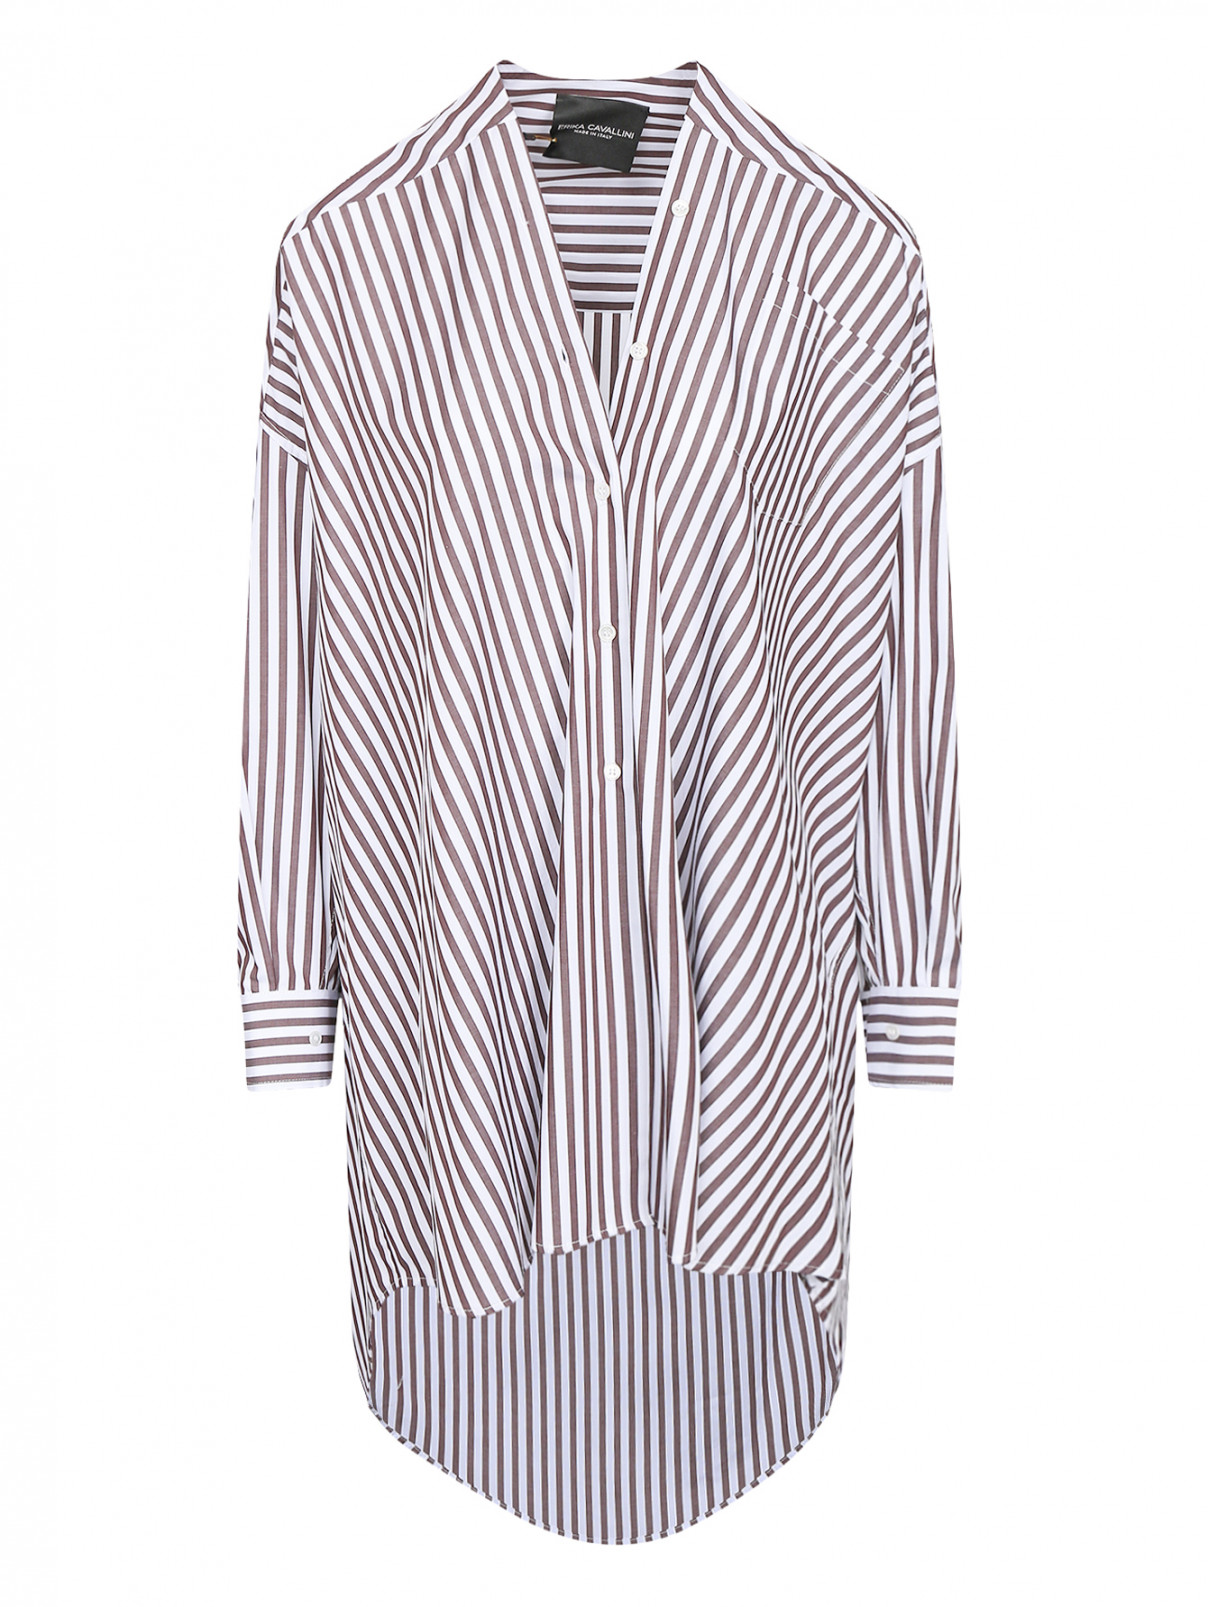 Удлиненная блузка из хлопка с узором "полоска" Erika Cavallini  –  Общий вид  – Цвет:  Бежевый